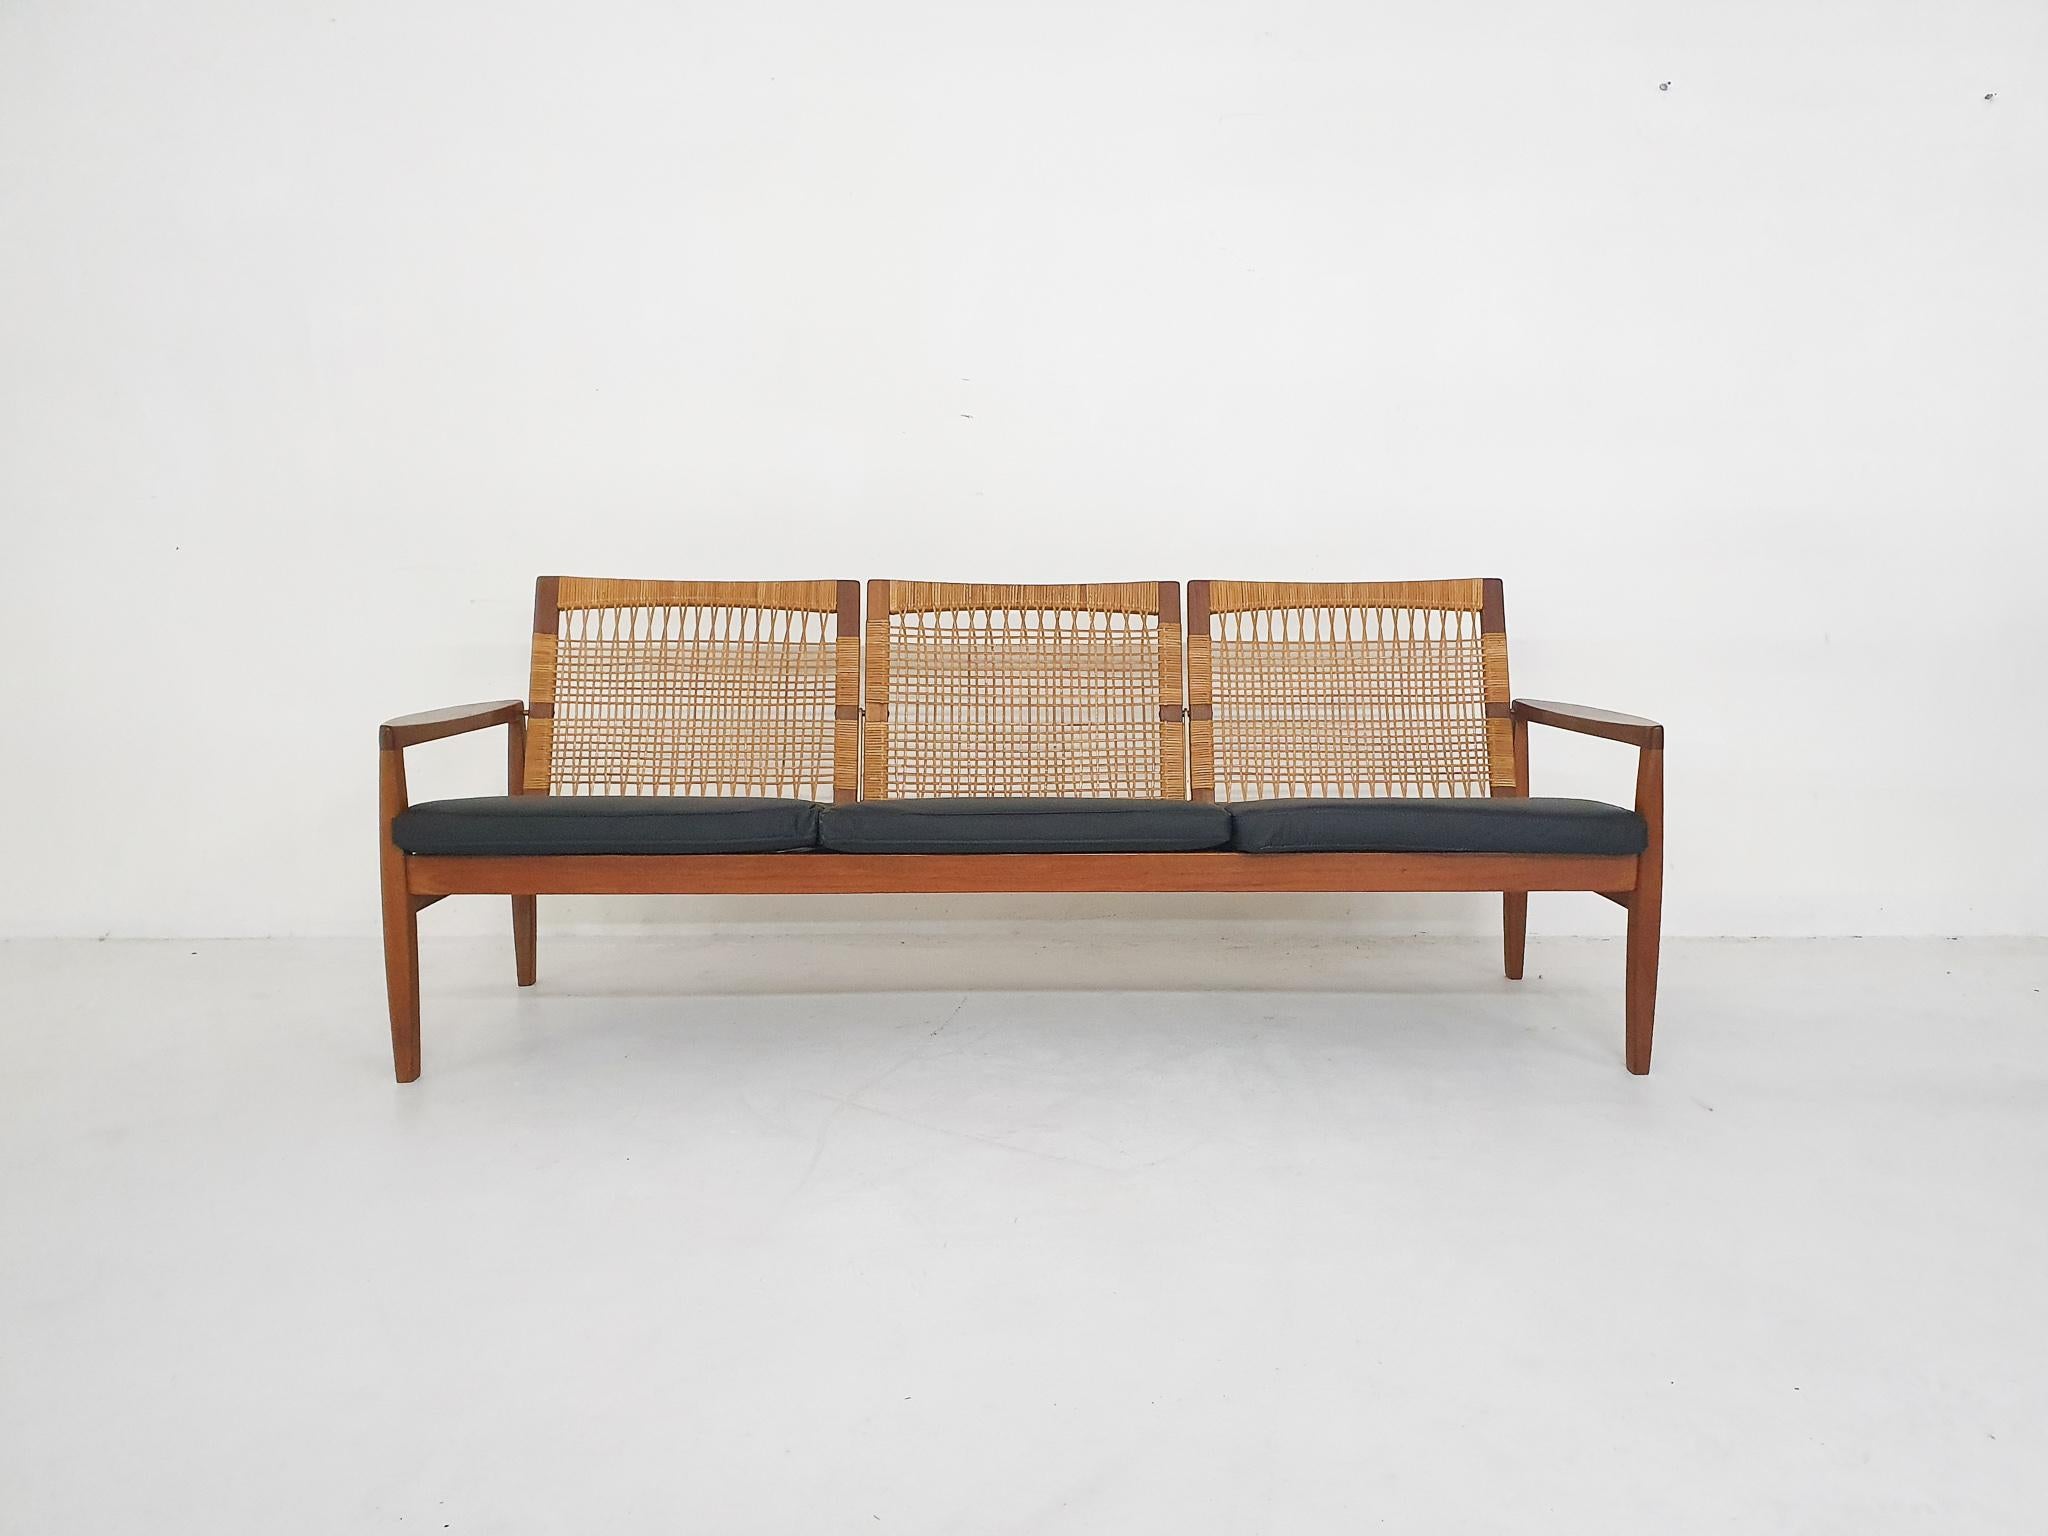 Scandinavian Modern Teak and Cane Sofa by Hans Olsen for Juul Kristensen, Denmark, 1950s For Sale